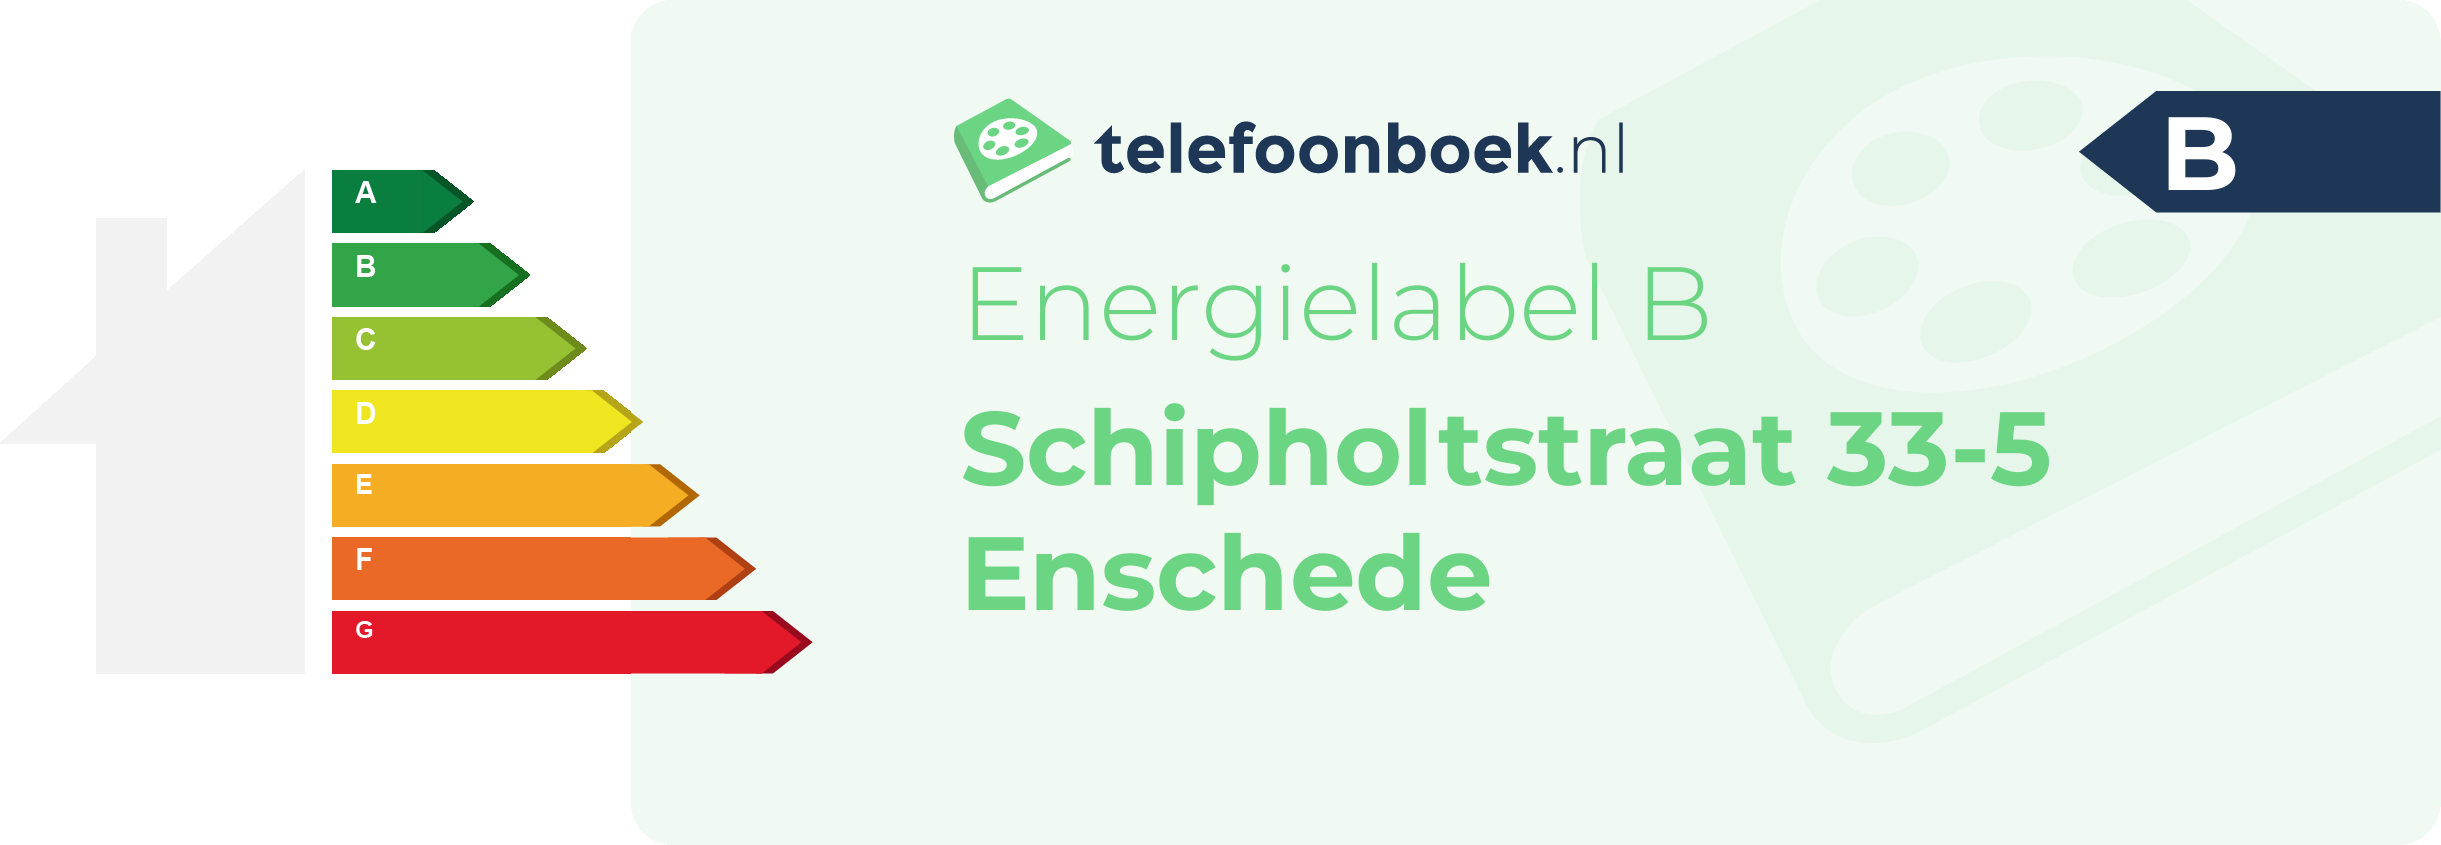 Energielabel Schipholtstraat 33-5 Enschede